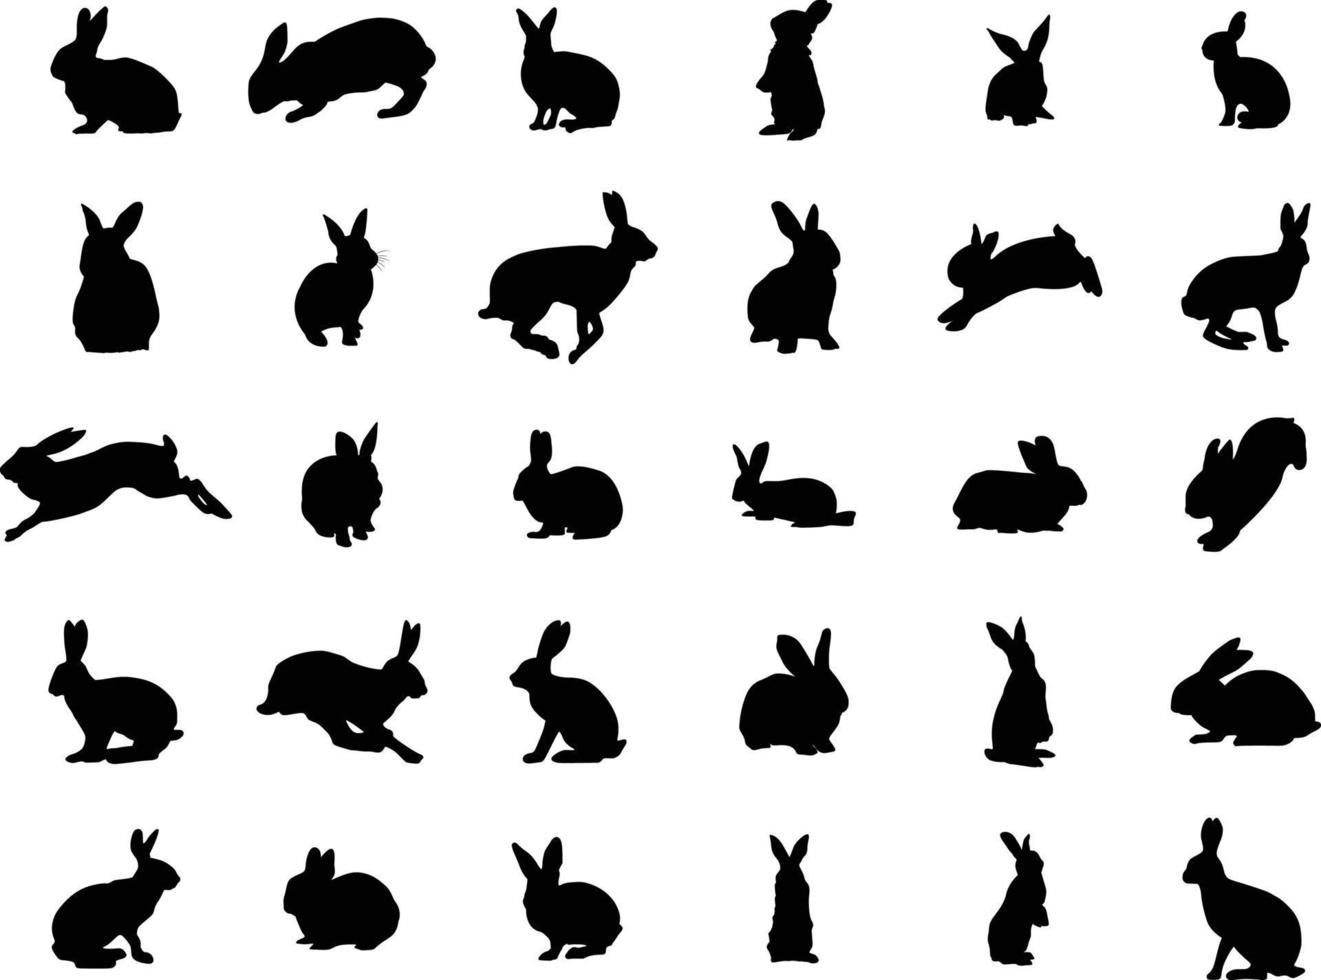 siluetas de conejitos de pascua aislados en un fondo blanco. conjunto de diferentes siluetas de conejos para uso de diseño. vector